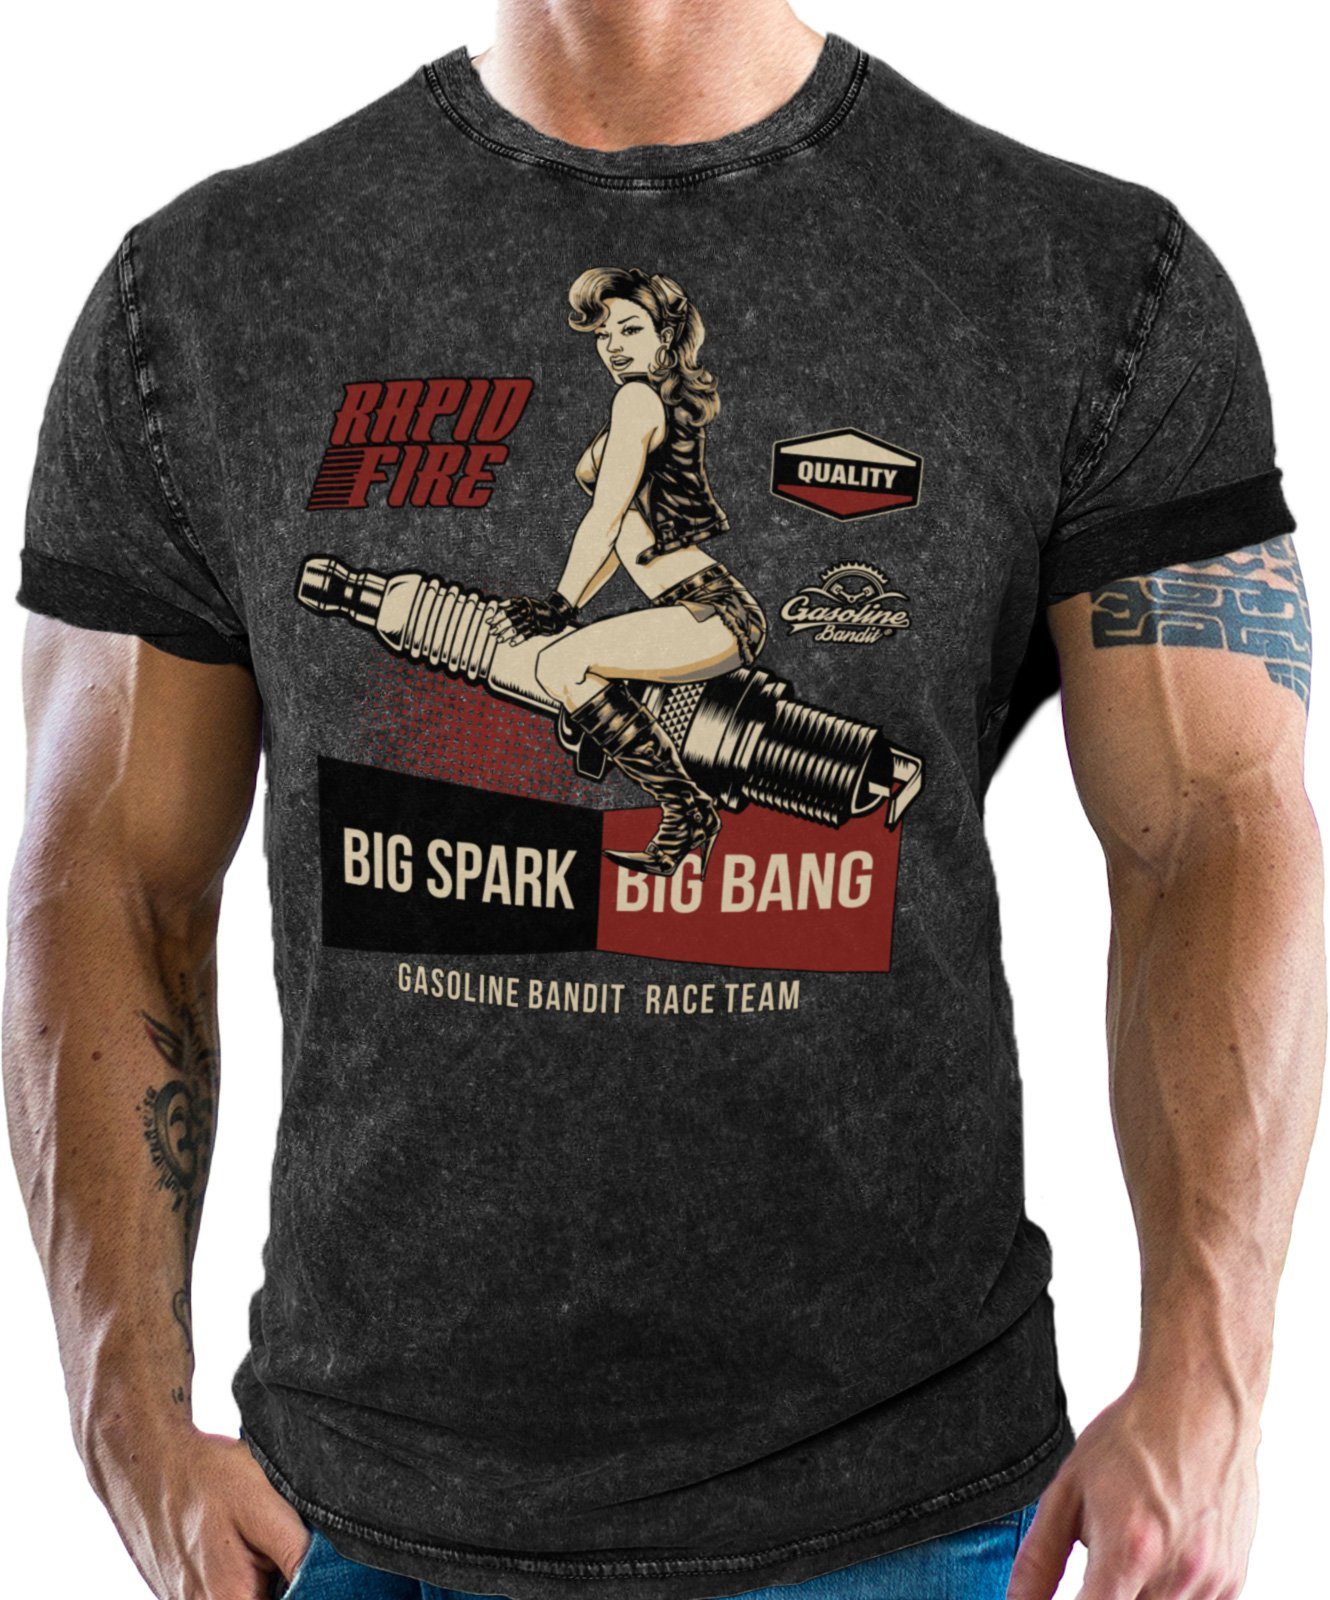 GASOLINE BANDIT® T-Shirt für Biker, Motorrad und Racing Fans: Big Spark Washed Black